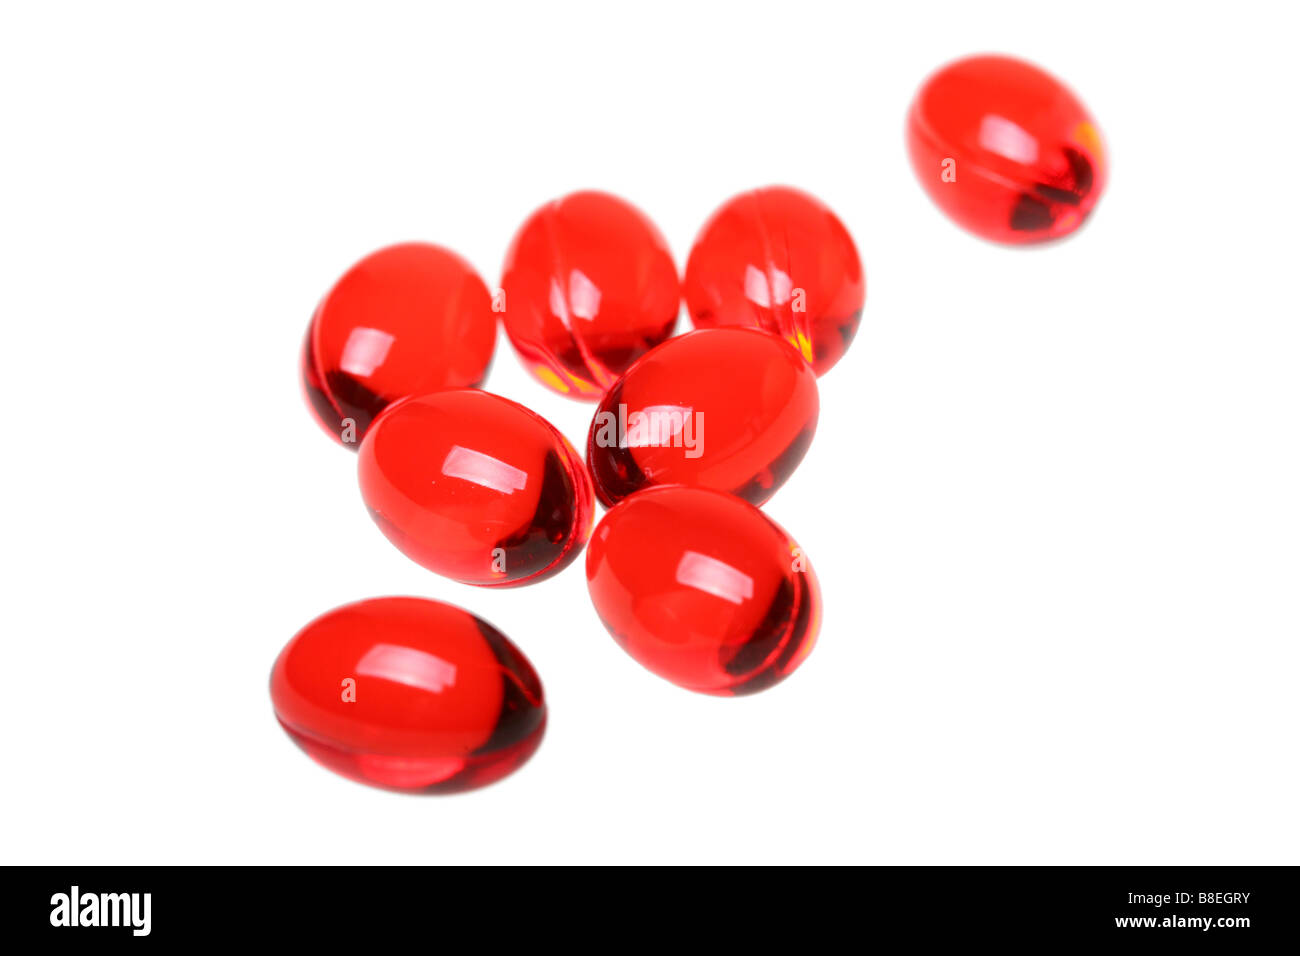 Red pills Stock Photo